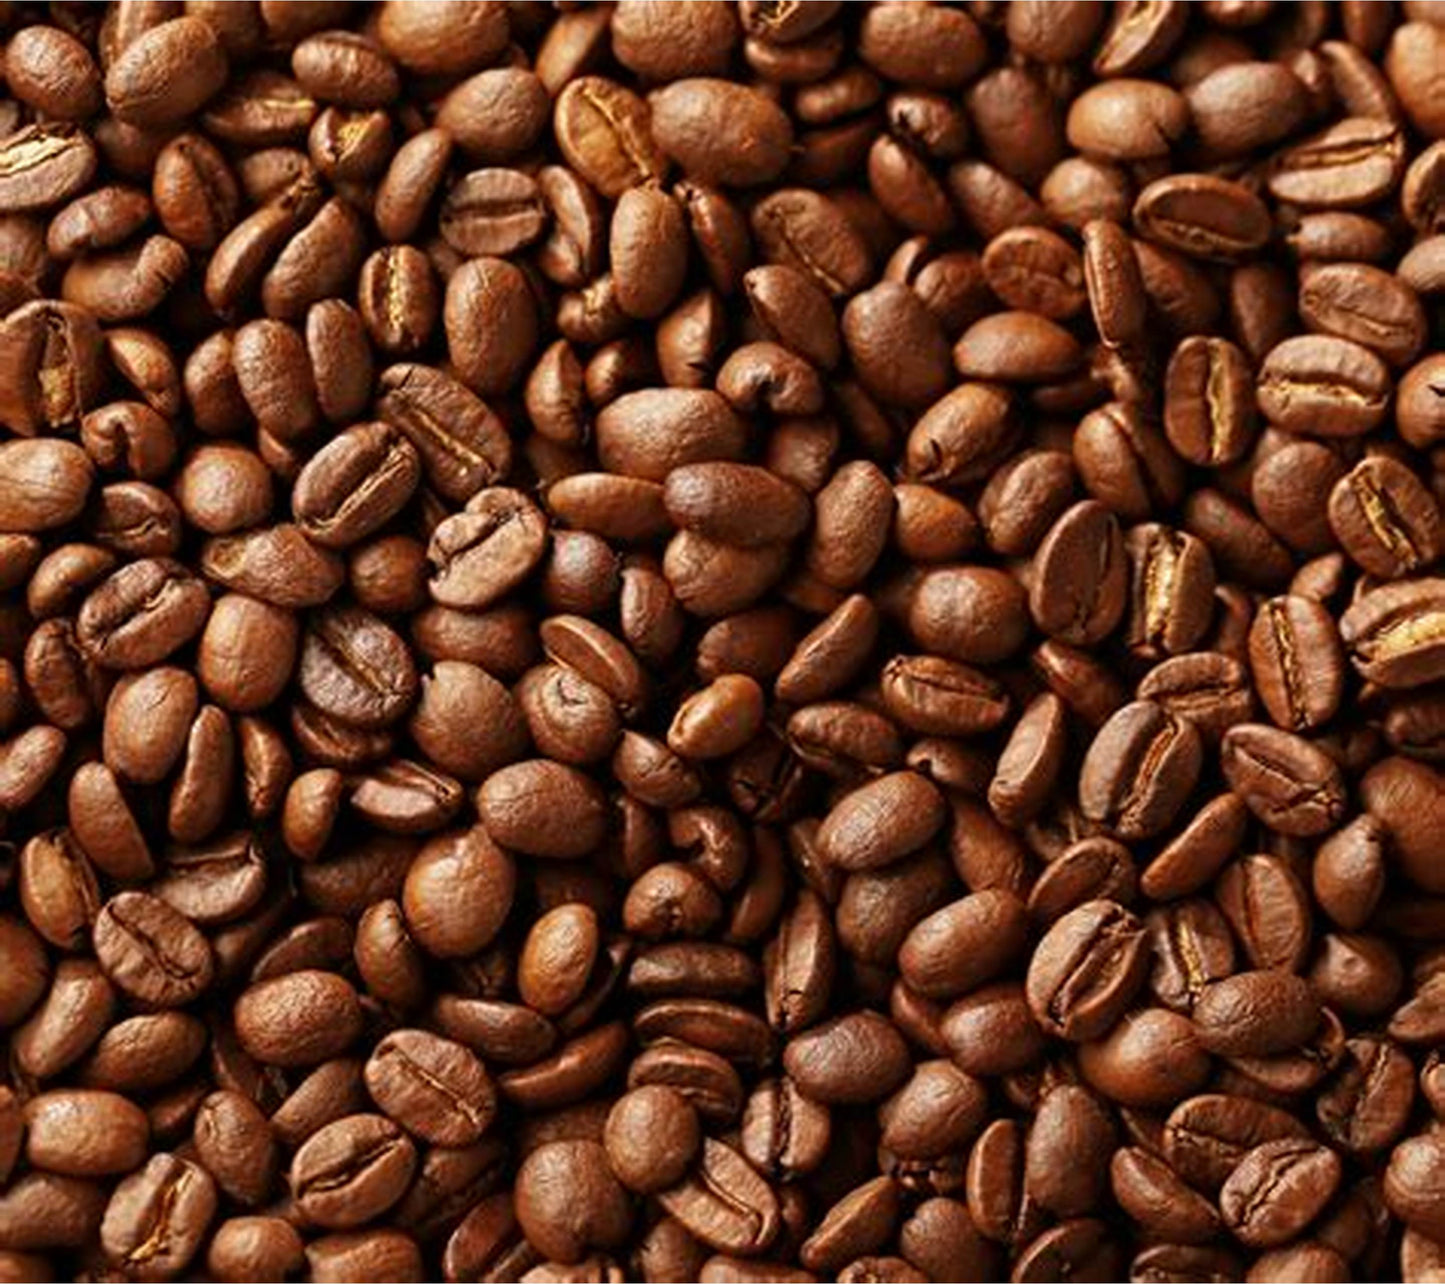 BLAUWE ADADO, Ethiopië, 250 g. (Natuurlijk proces). Speciale koffie van hoge kwaliteit